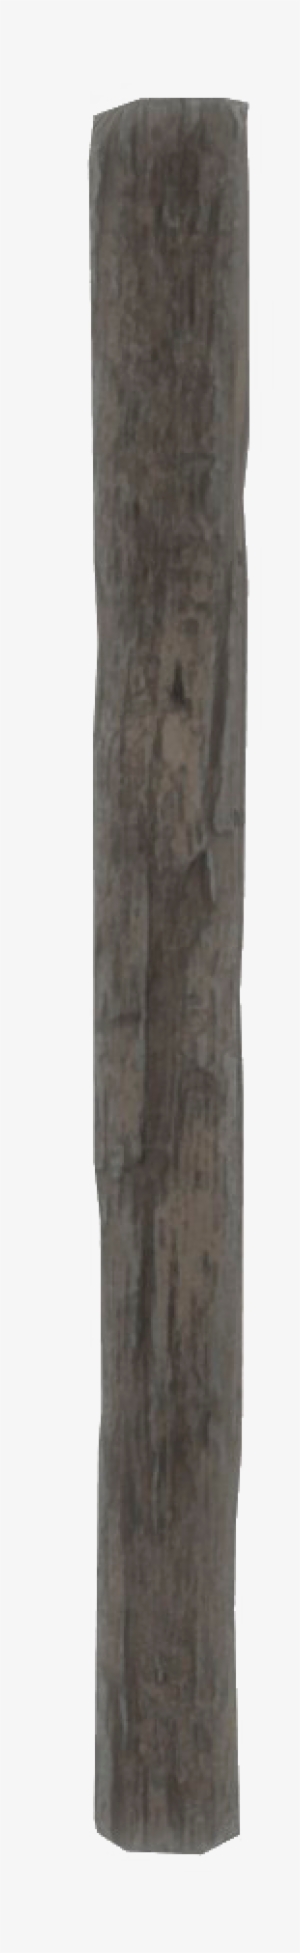 Wood Post Png - Wood